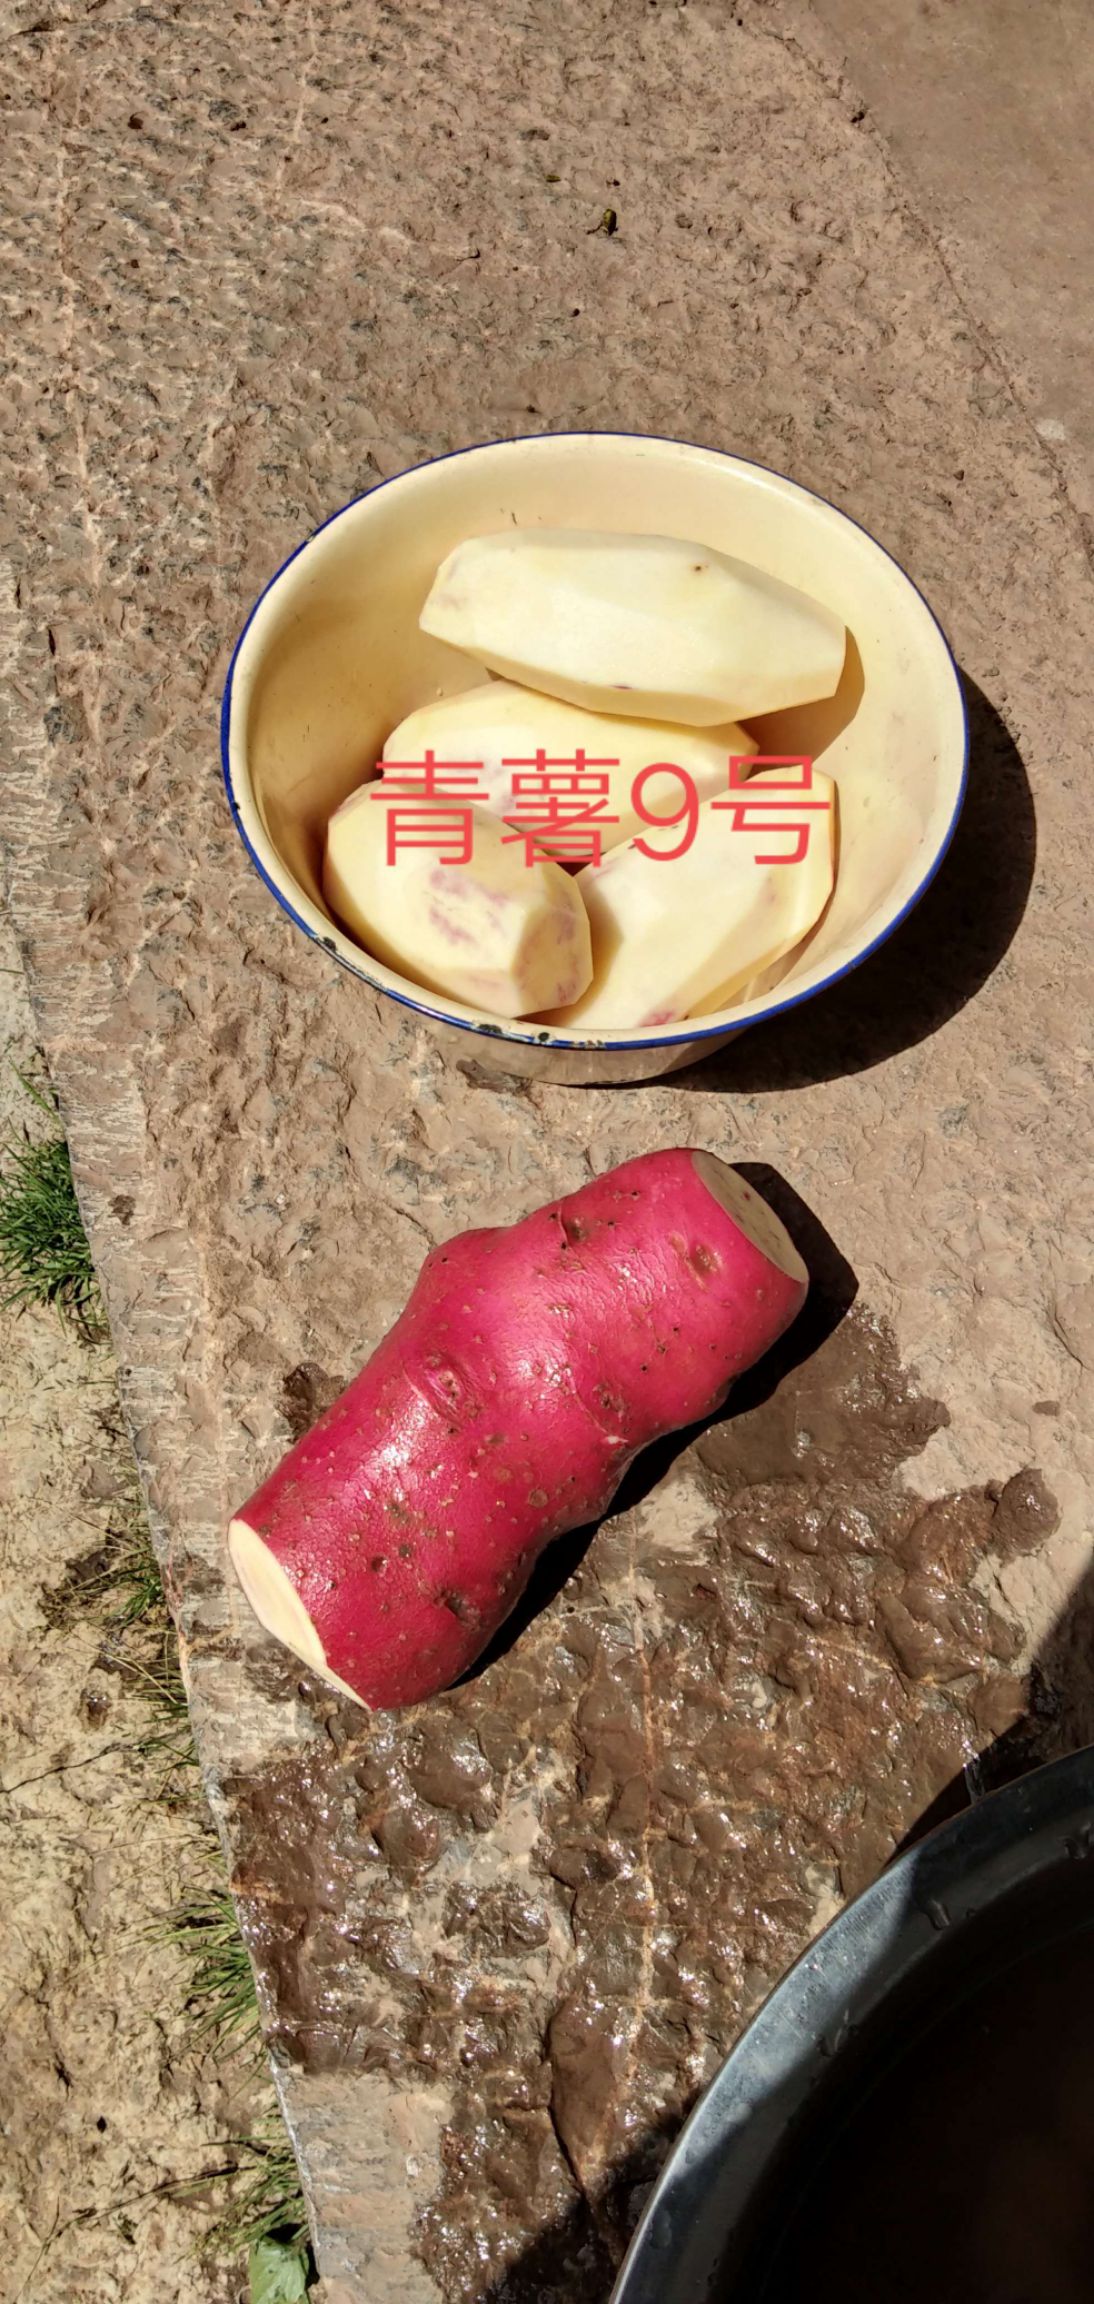 玉龙纳西族自治县青薯9号  品种质量保证，让买家放心，诚信经营。